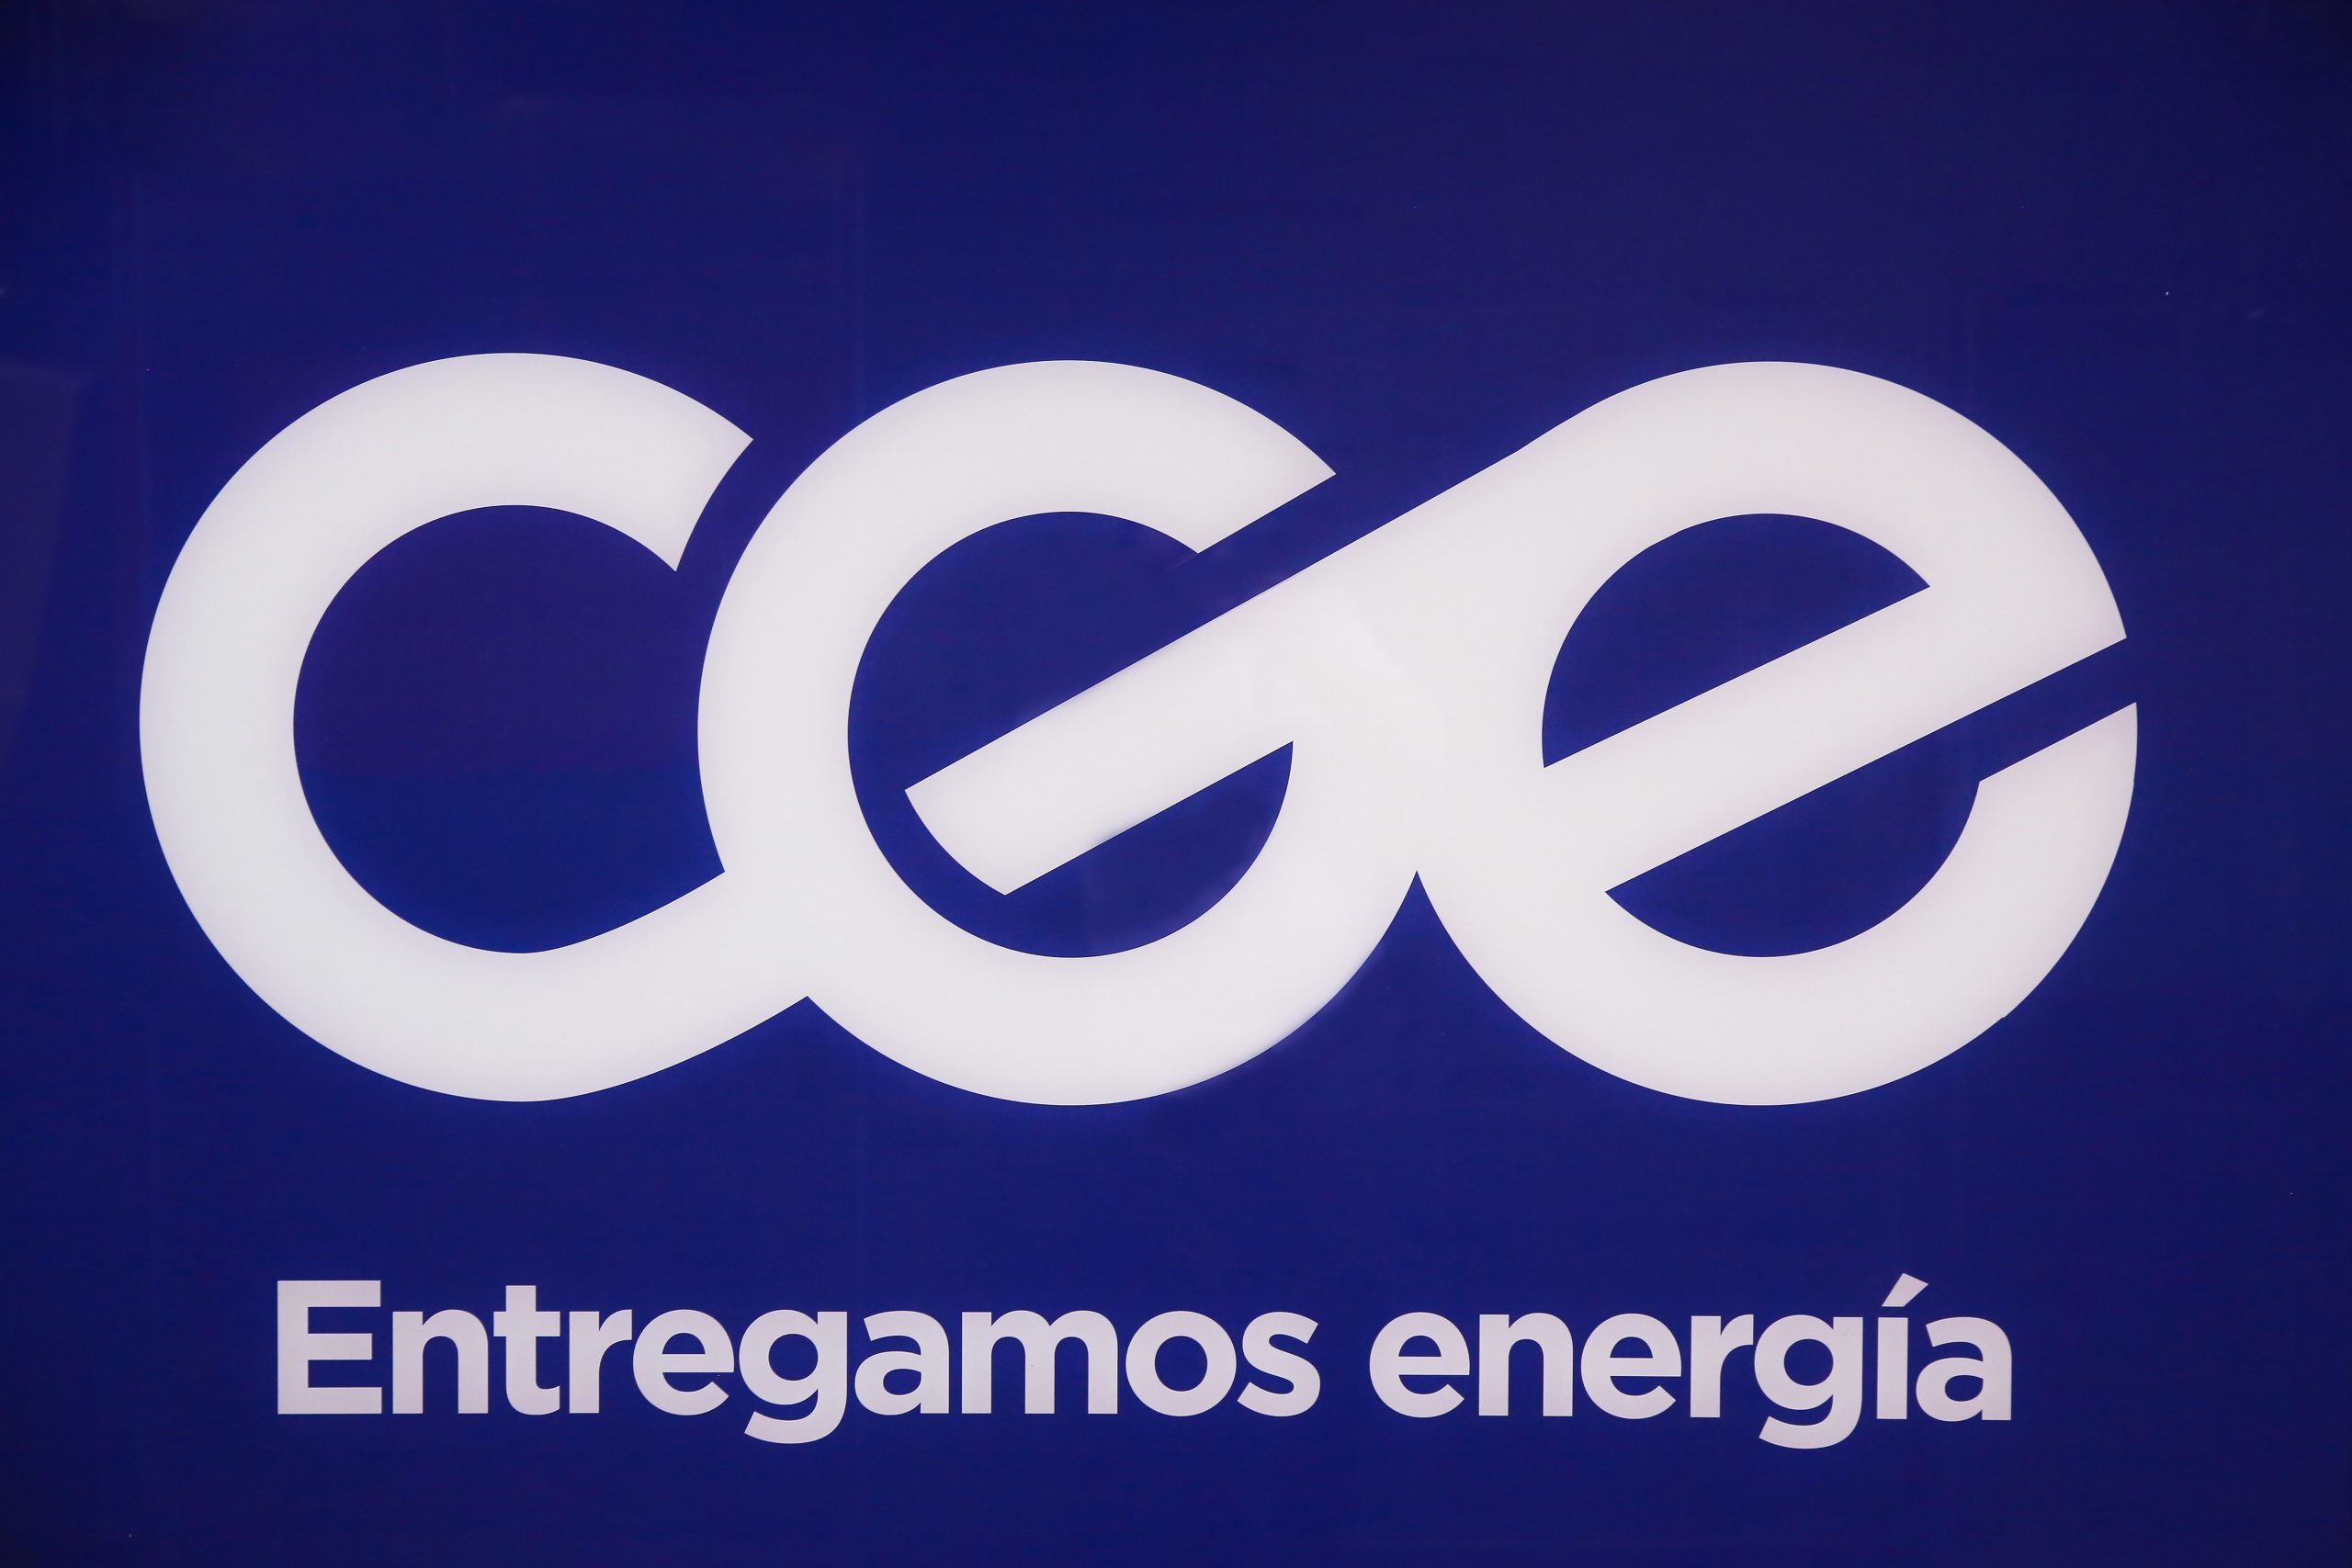 CGE nuevo logo 2